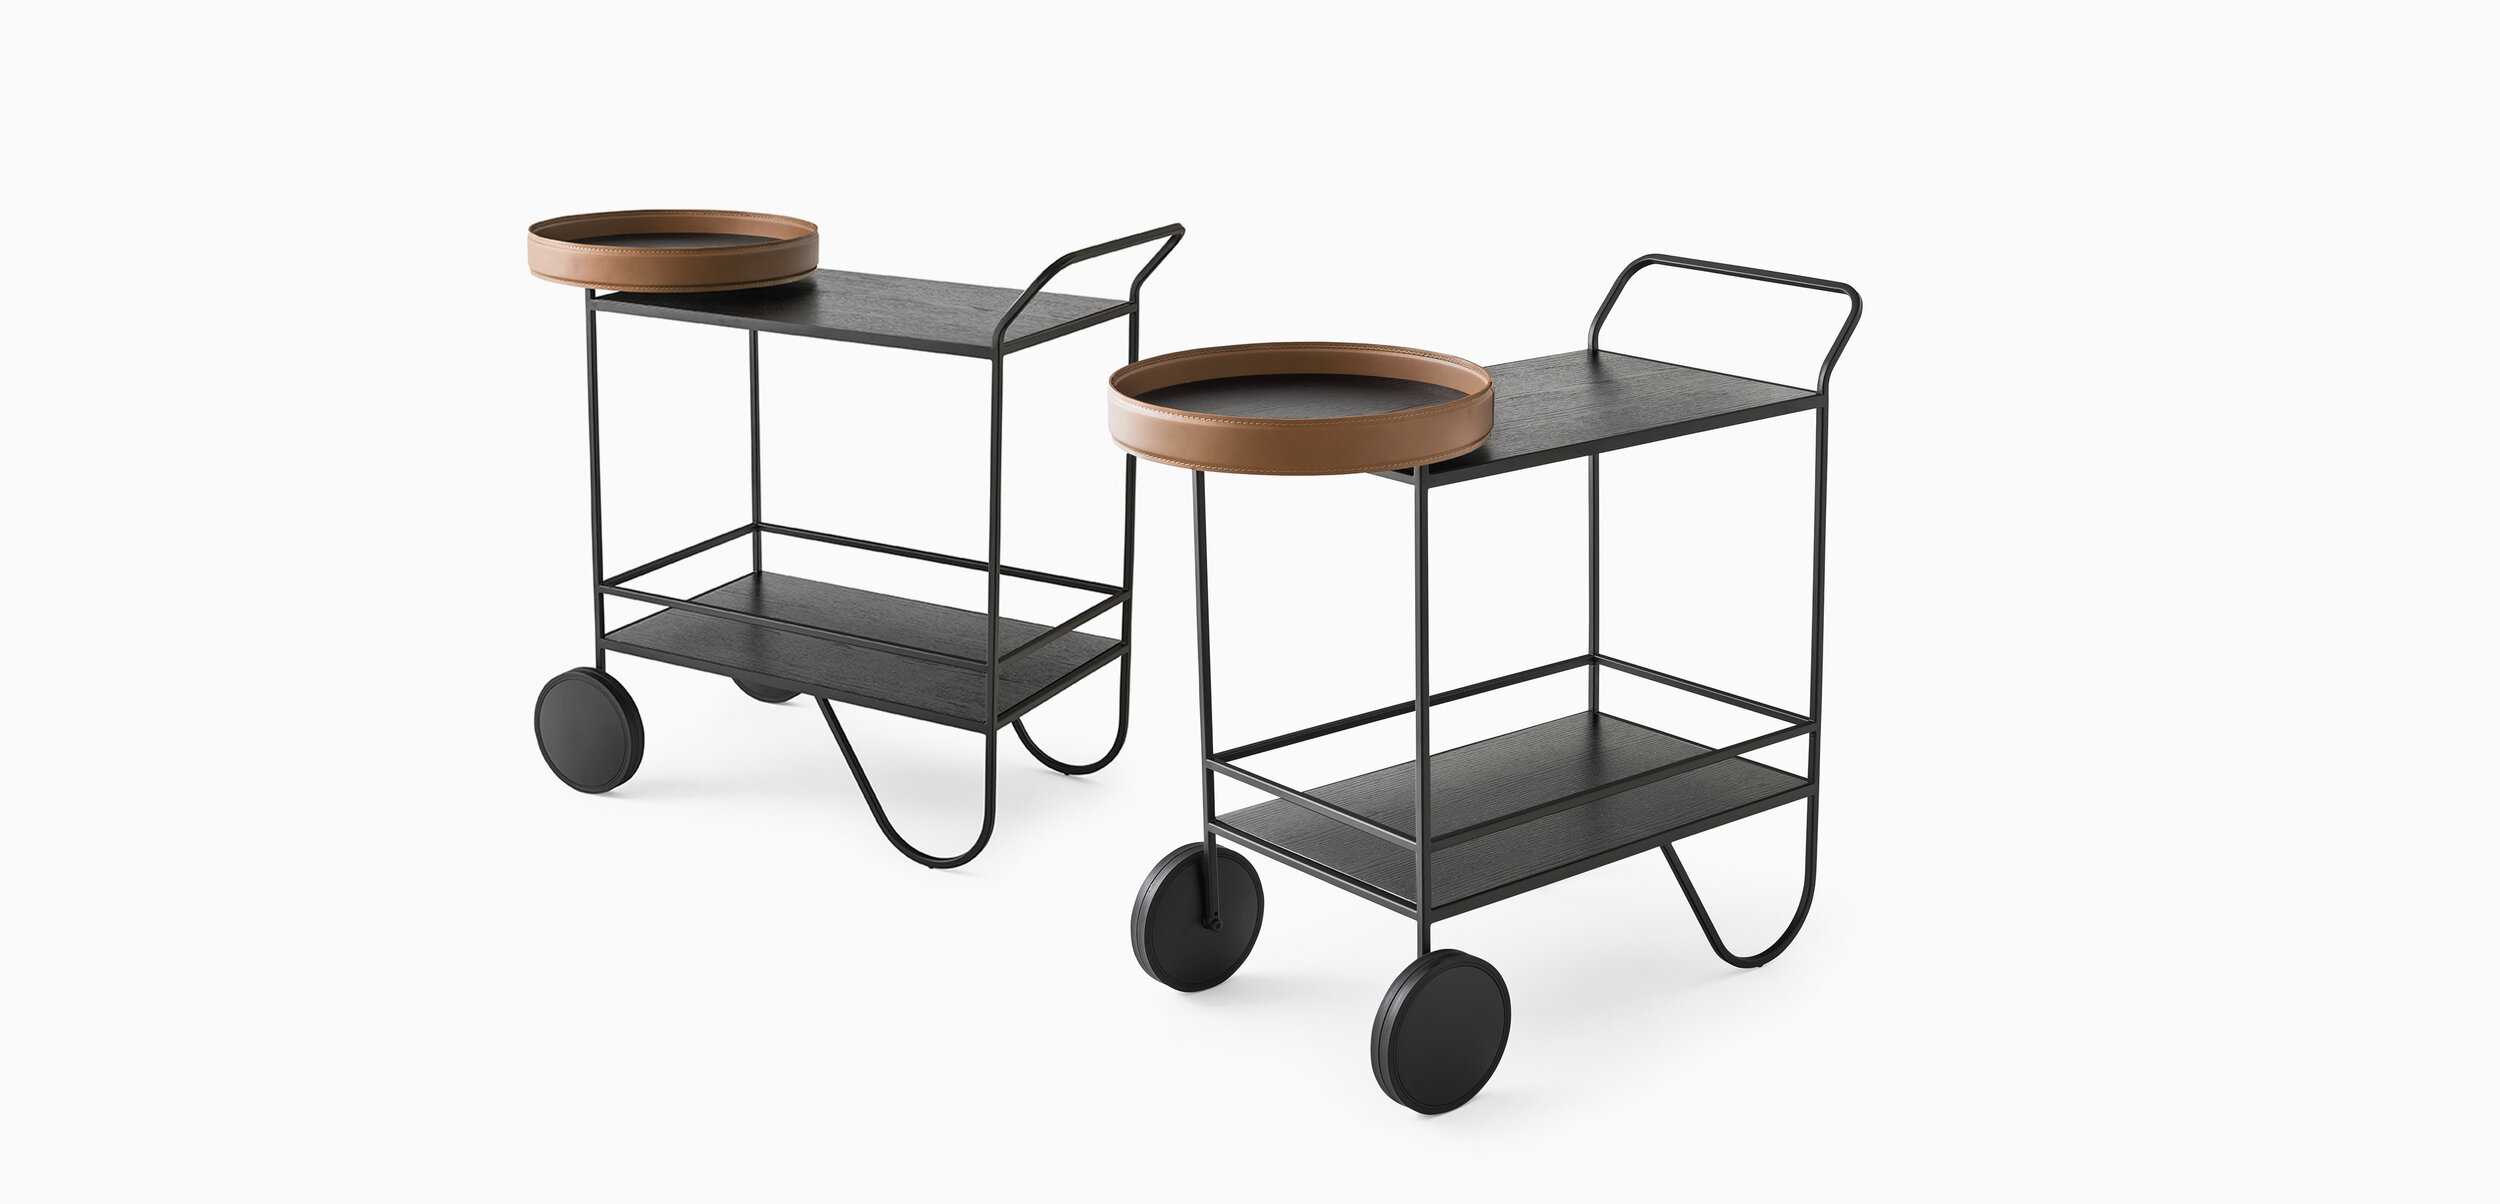 Ontkennen Hassy Belangrijk nieuws Giro drinks trolley — Commercial furniture solutions | Aspect Furniture